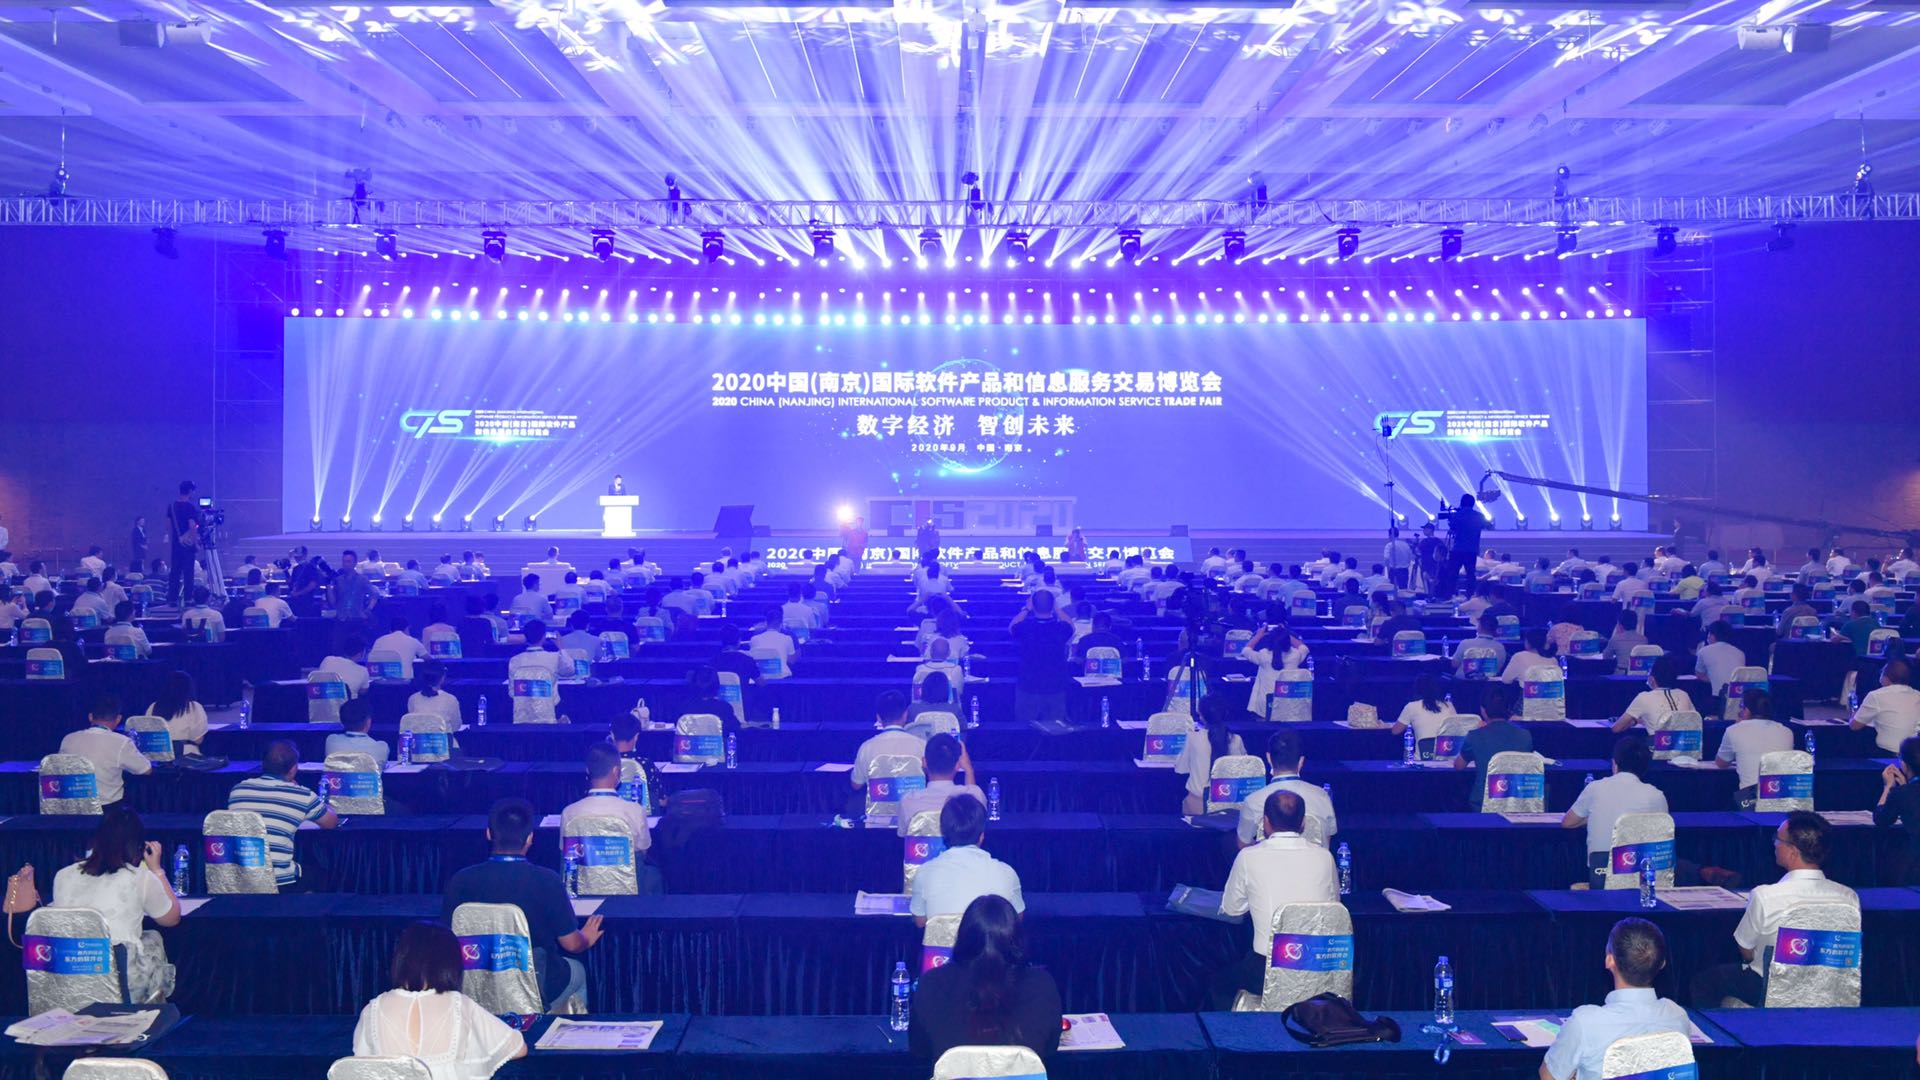 2020软博会开幕式暨全球软件产业高峰论坛在南京举行